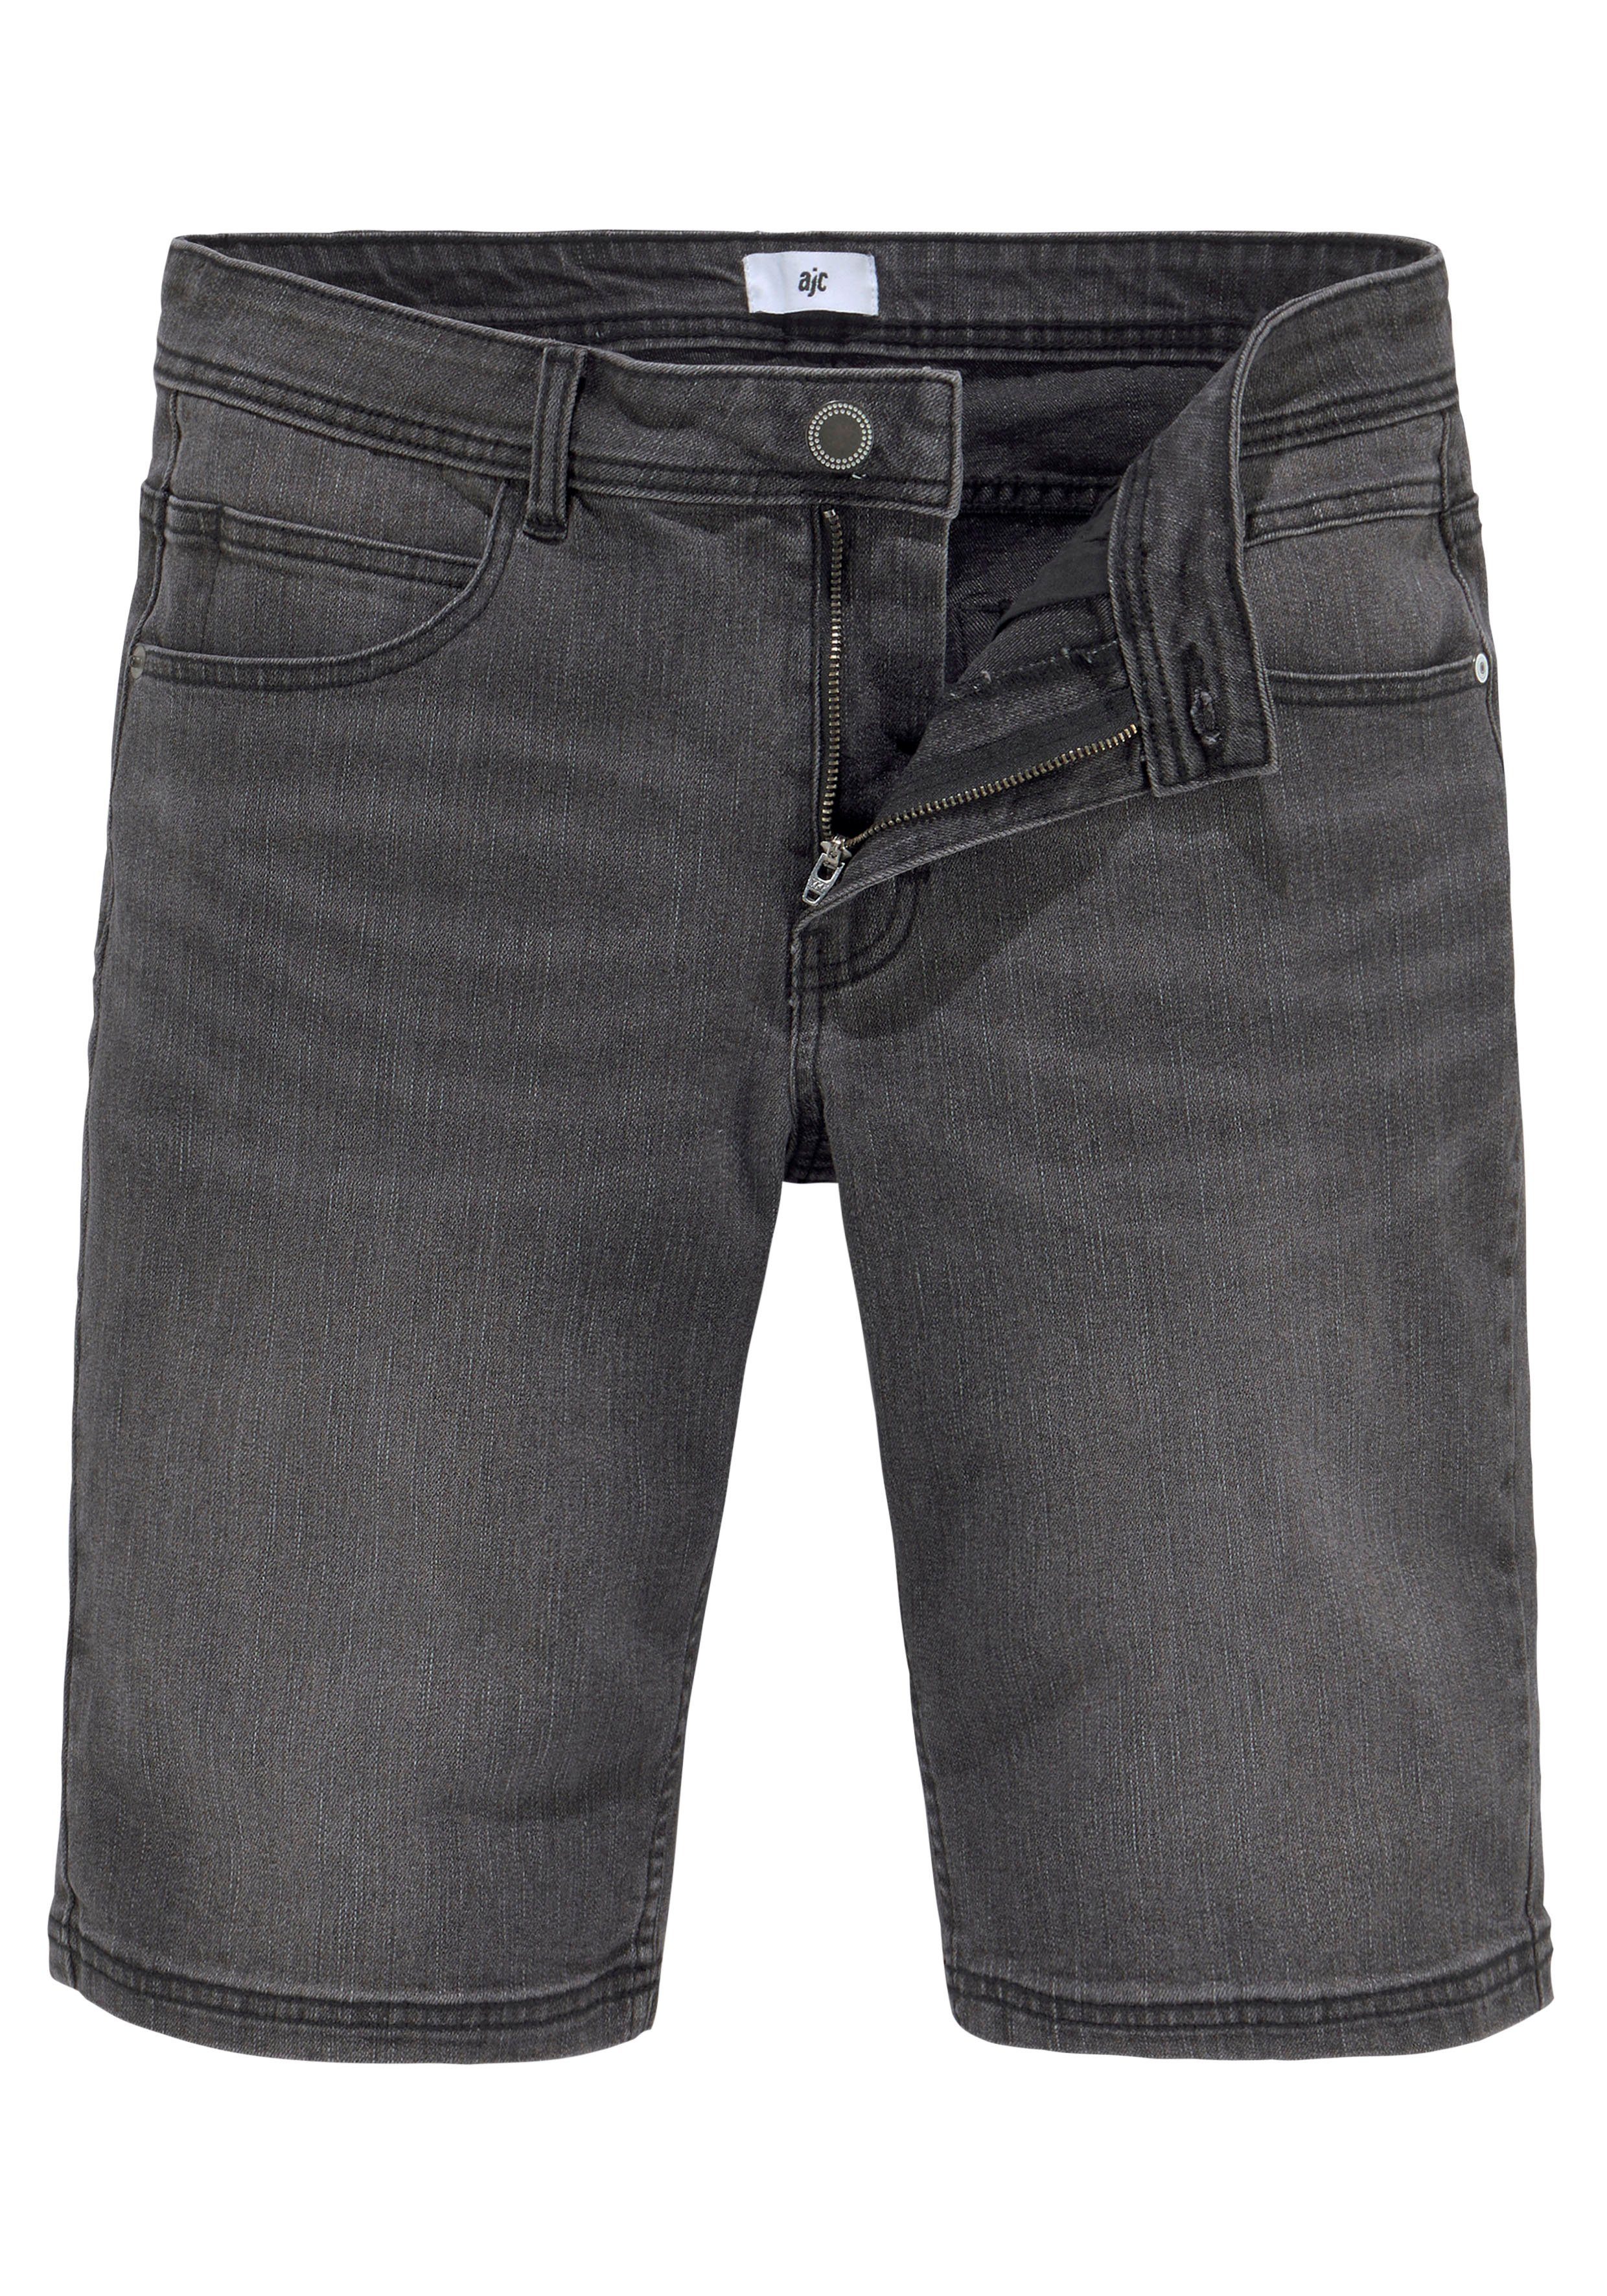 Shorts dark im grey AJC 5-Pocket-Stil